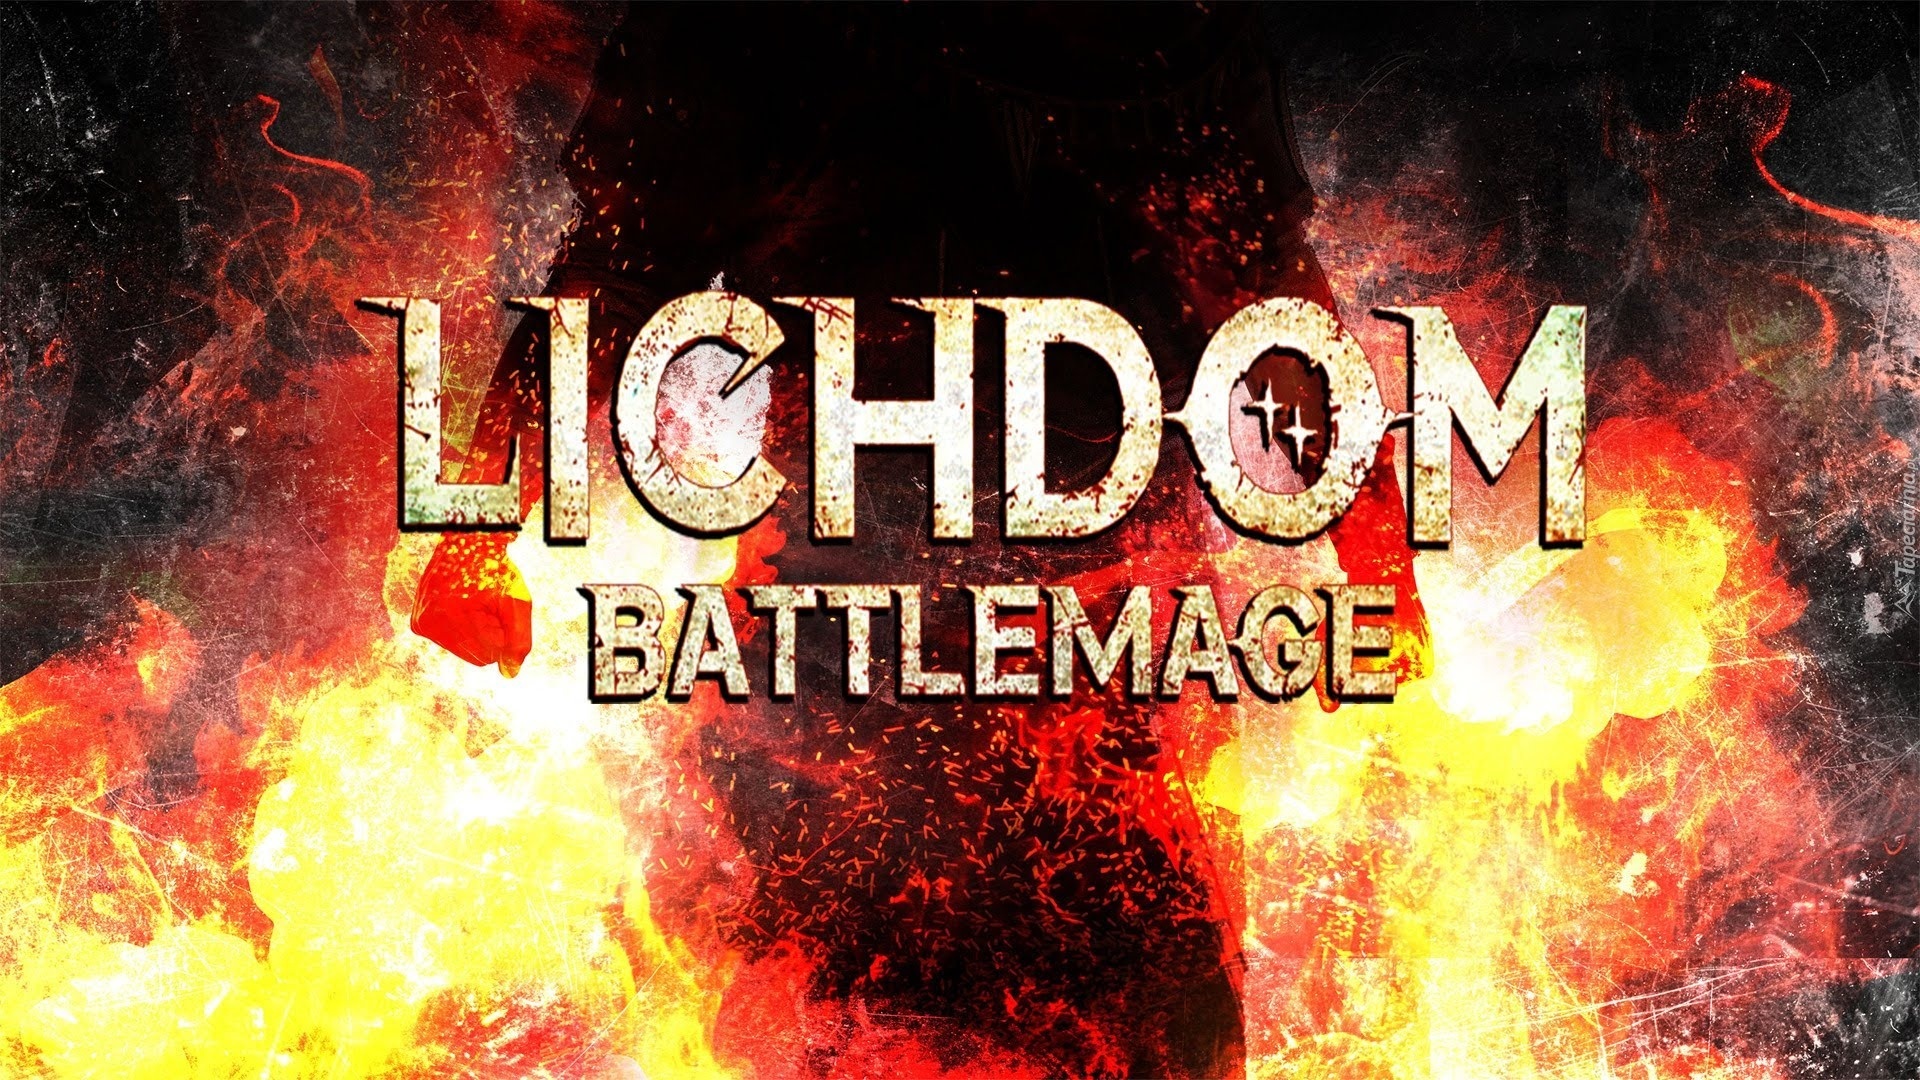 lichdom battlemage metacritic download